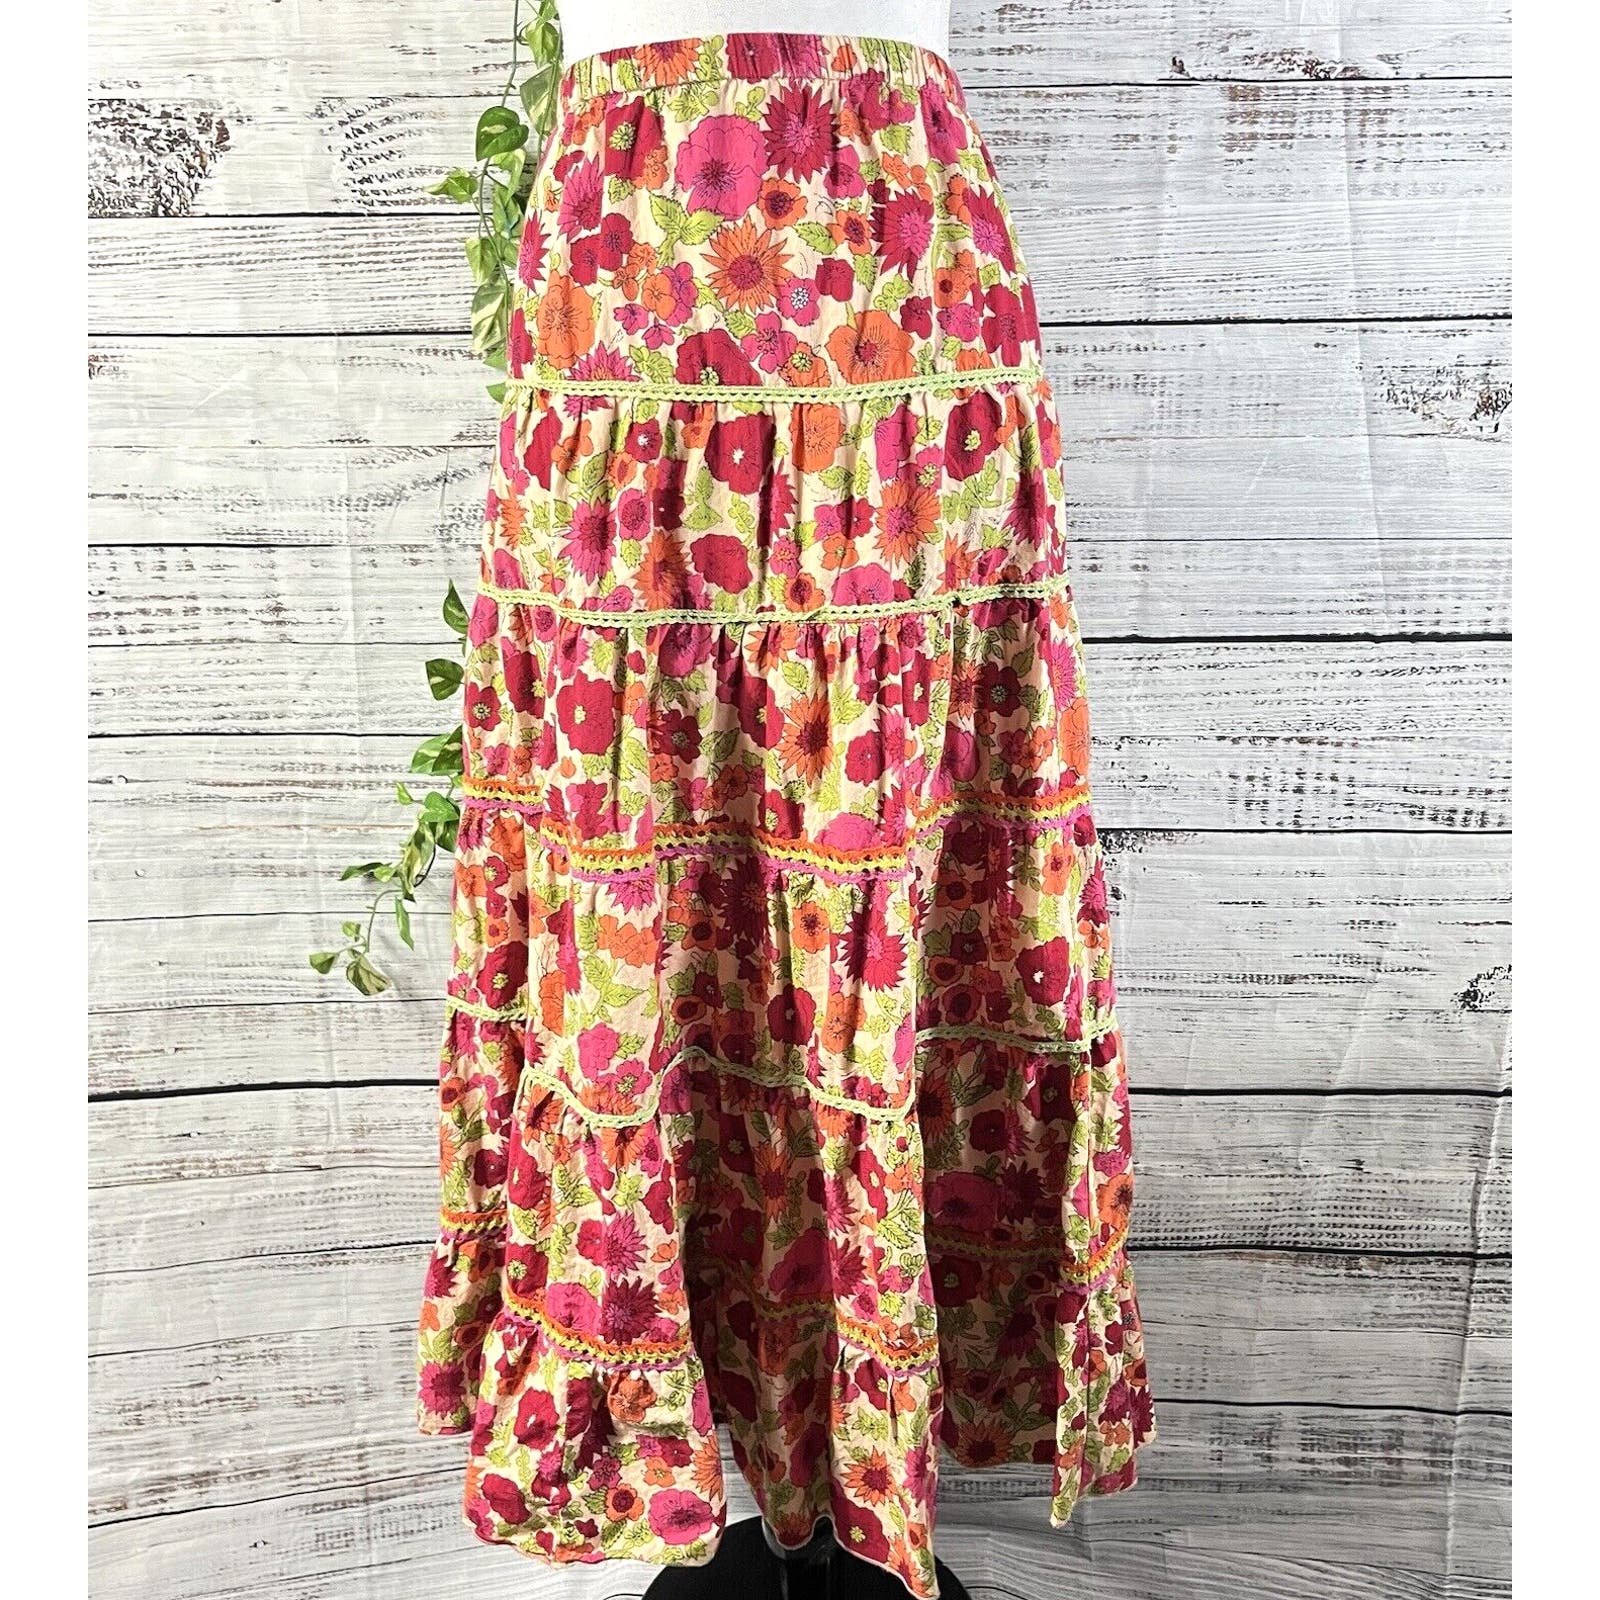 Great Coldwater Creek Skirt size Medium Long Pink Orange Floral Boho Full Cottage Core miDVrLnvk Cool